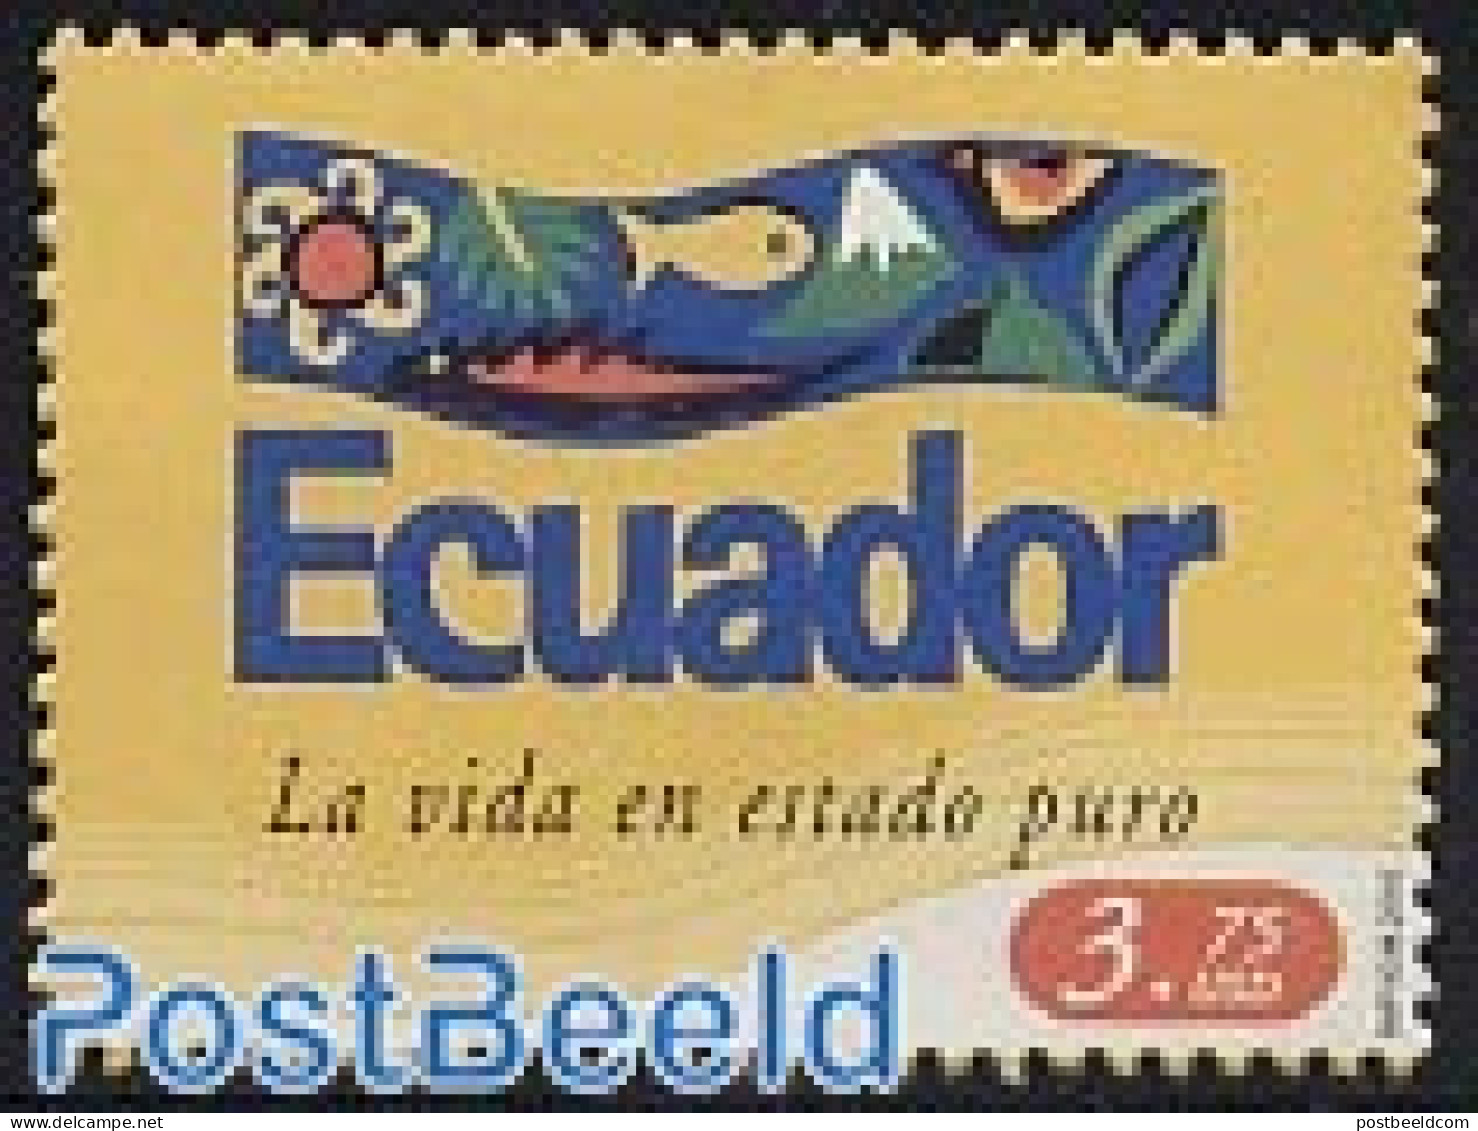 Ecuador 2005 Pure Life 1v, Mint NH, Nature - Birds - Fish - Fische